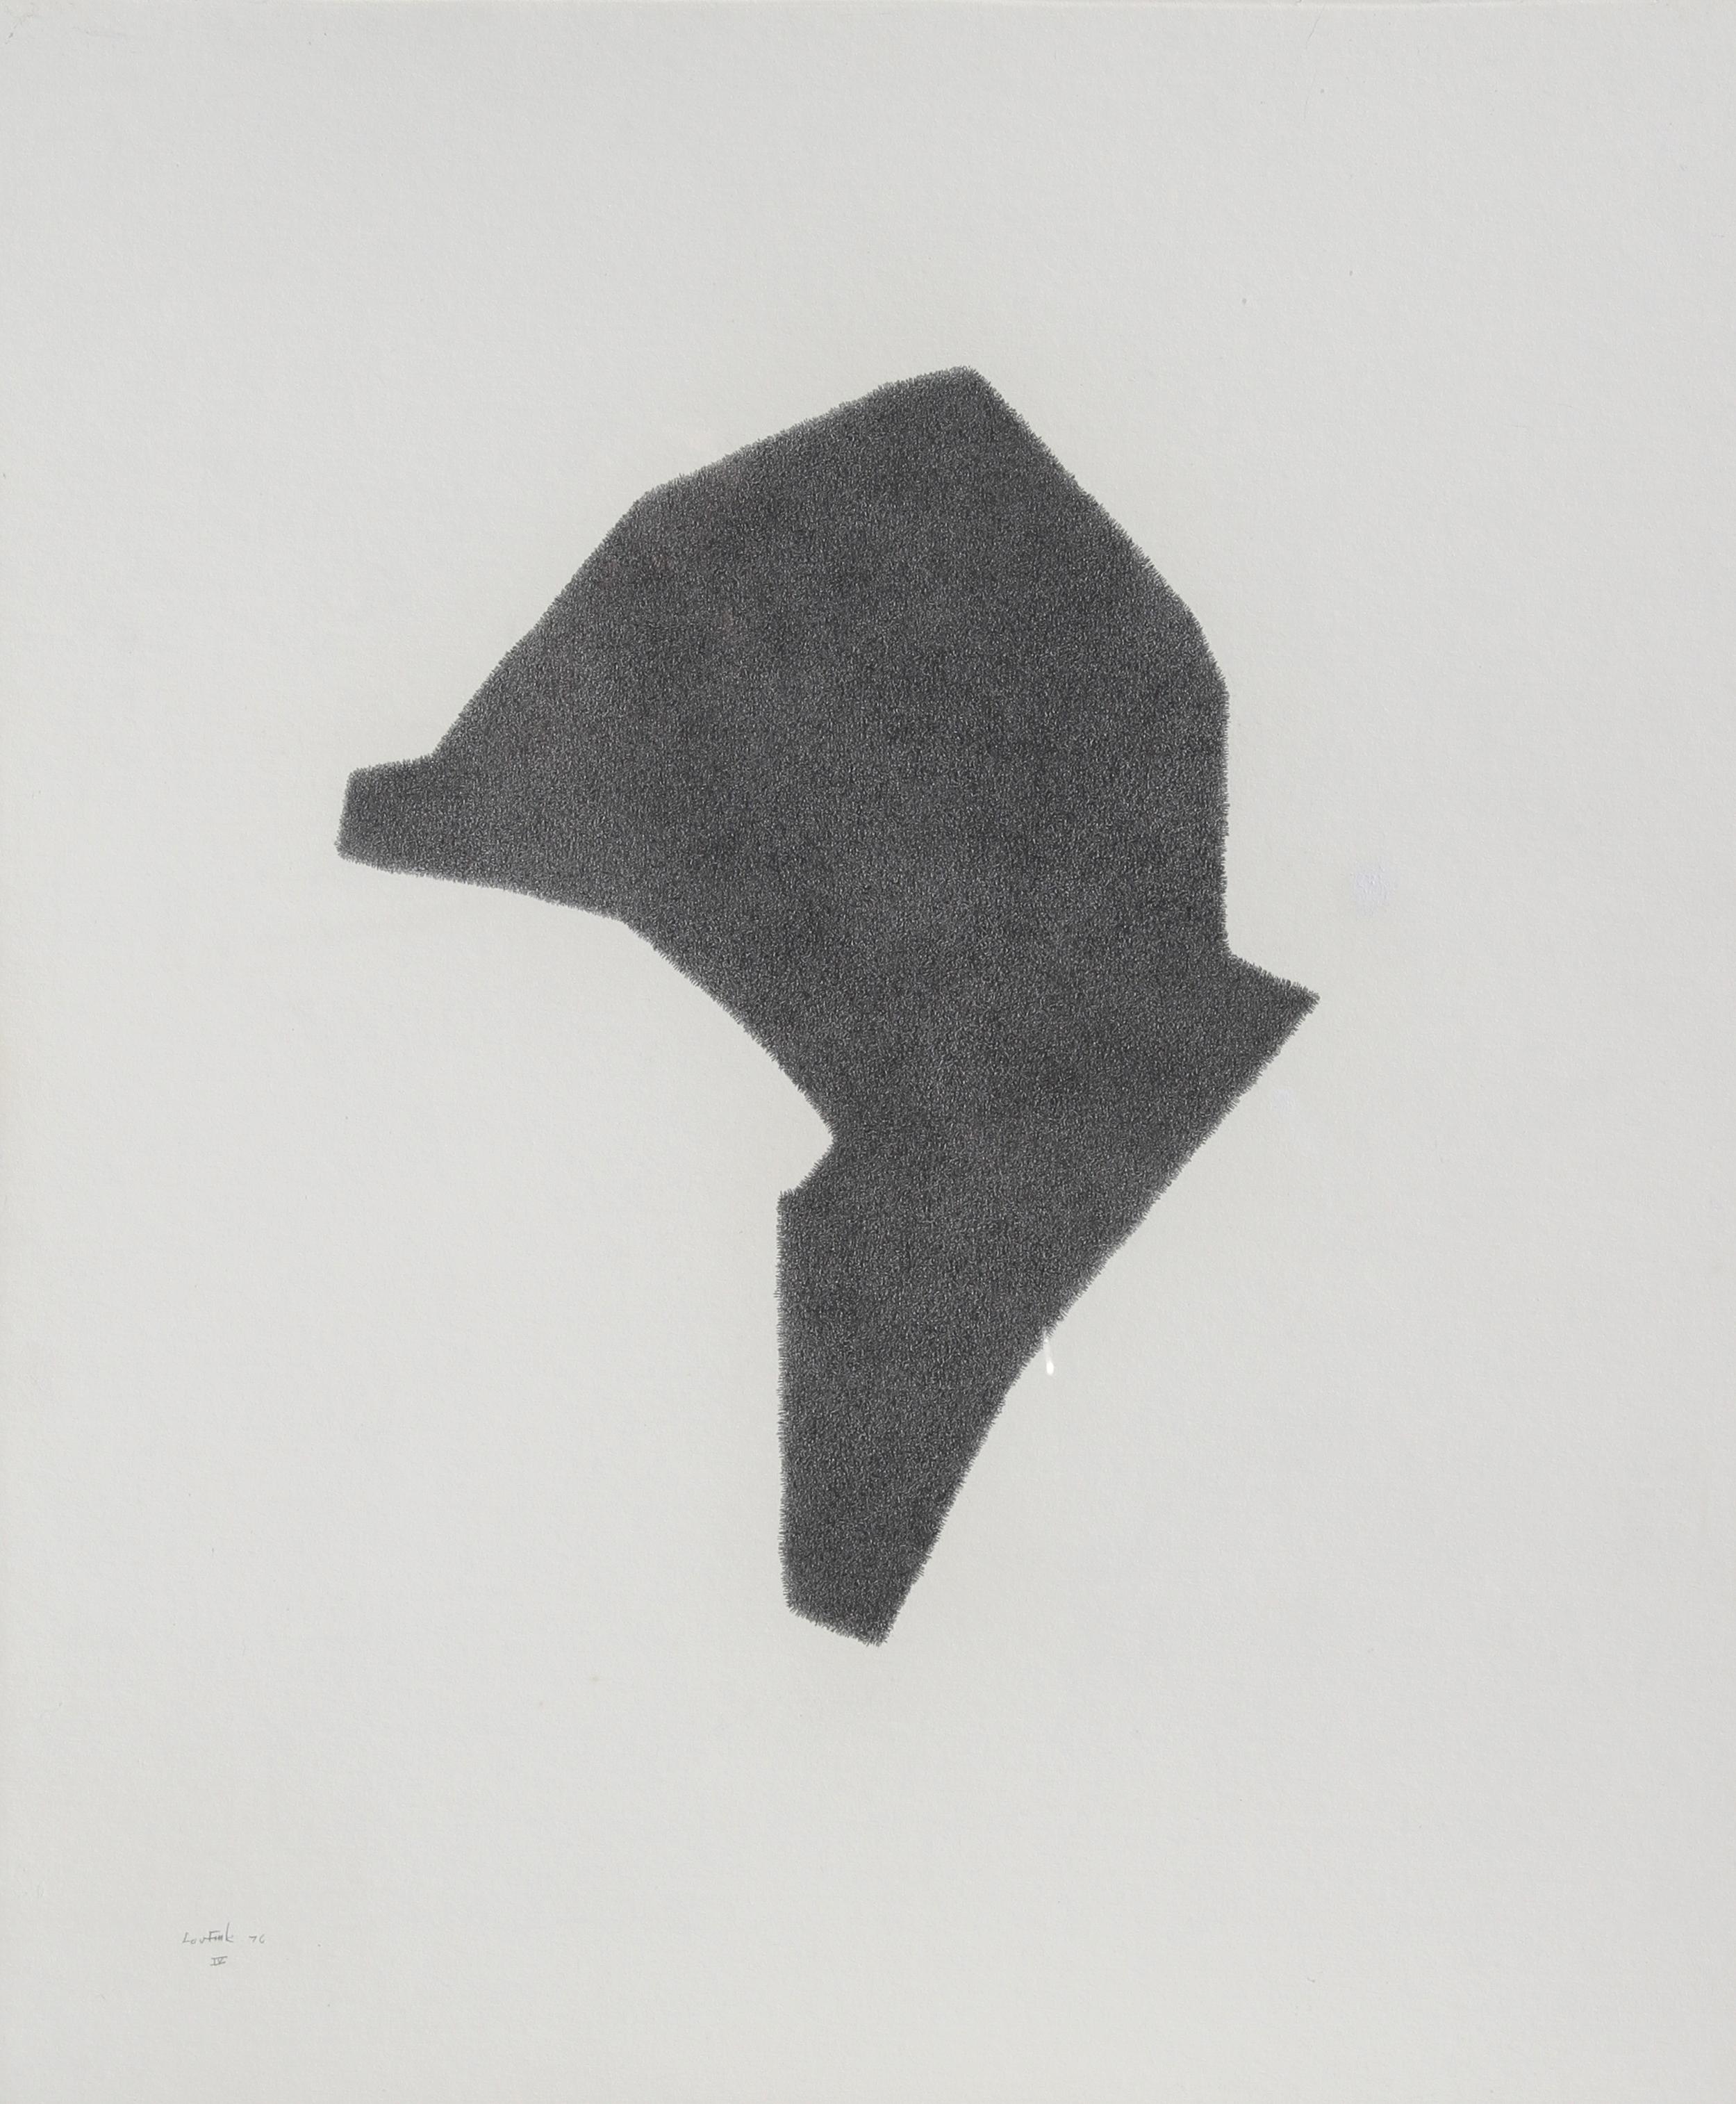 Künstler: Lou Fink
Titel: Helm #4
Jahr: 1976
Medium: Bleistift auf Papier, signiert und datiert v.l.n.r.
Größe: 20 in. x 24 in. (50,8 cm x 60,96 cm)